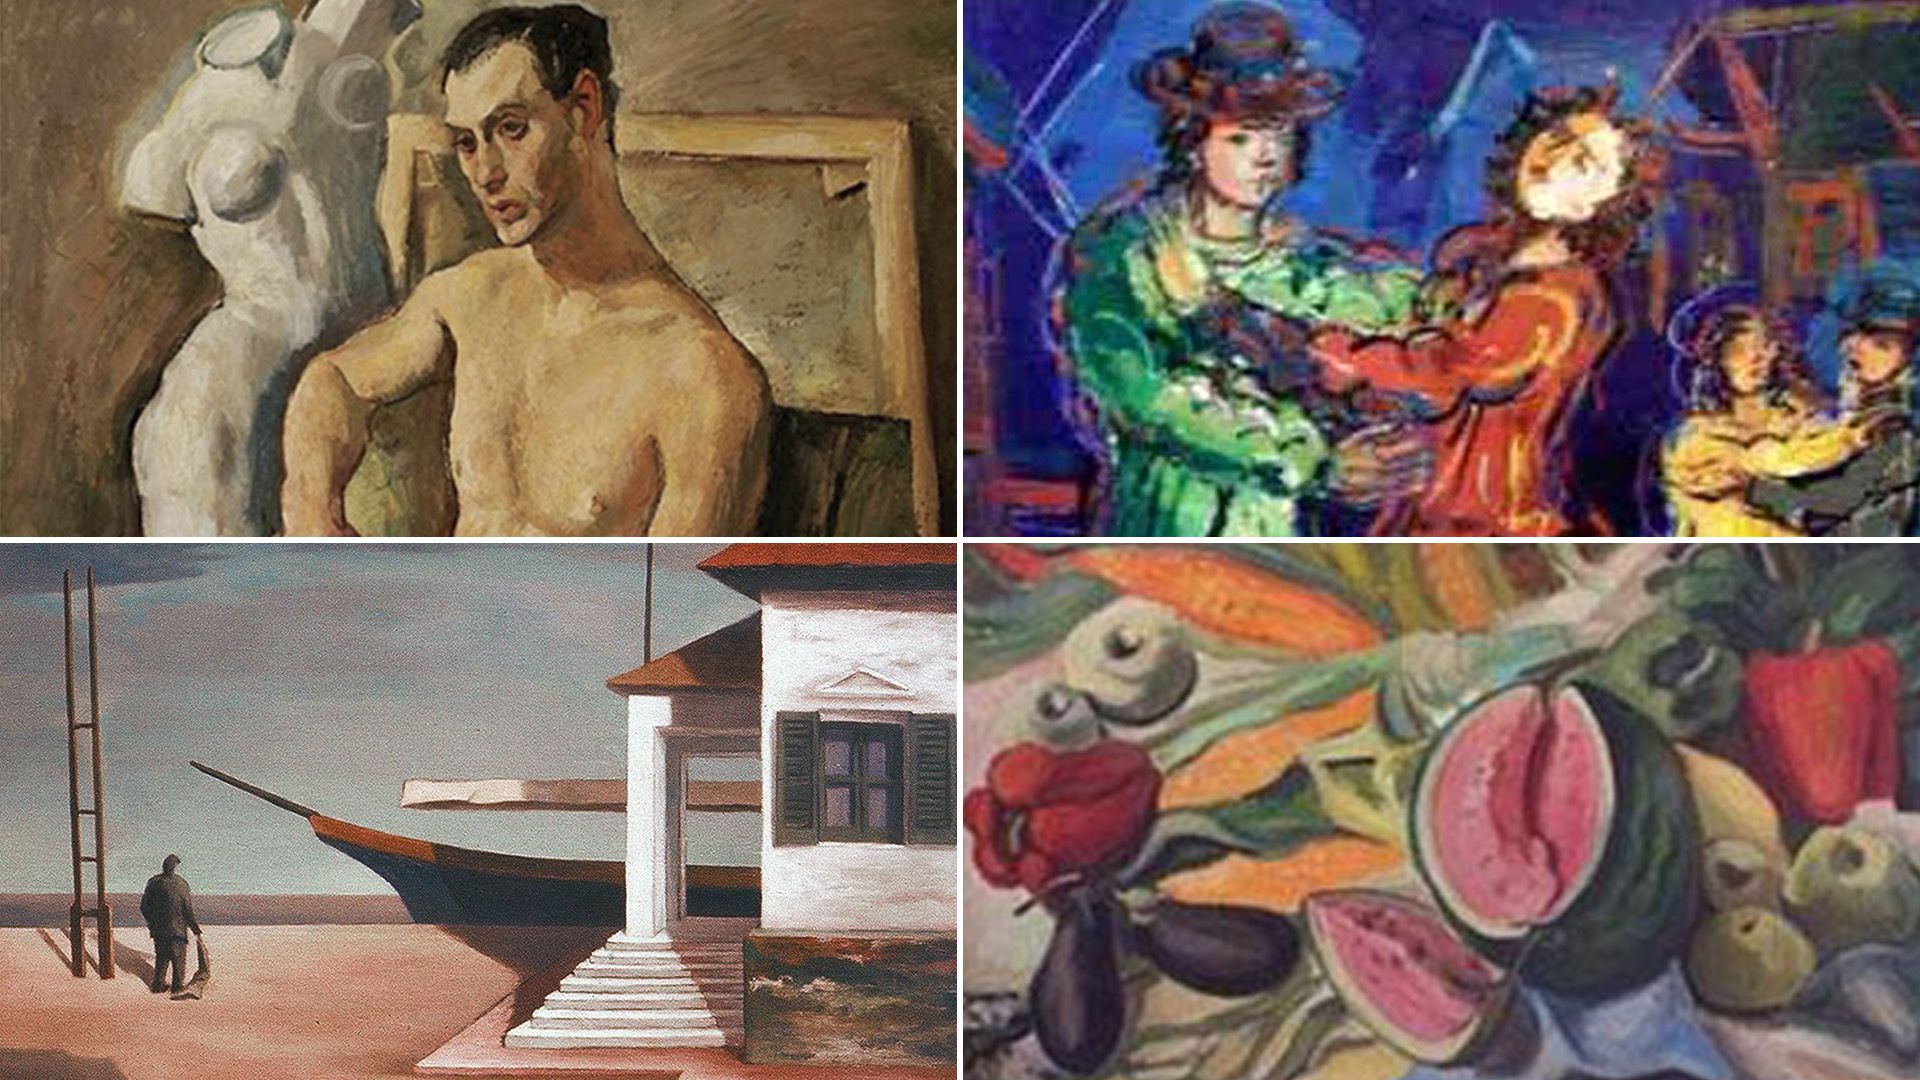 Pintores argentinos. Obras de Jorge Larco (arriba, izq), Bruno Venier (arriba, der), Onofrio Pacenza (abajo, izq) y Mané Bernardo